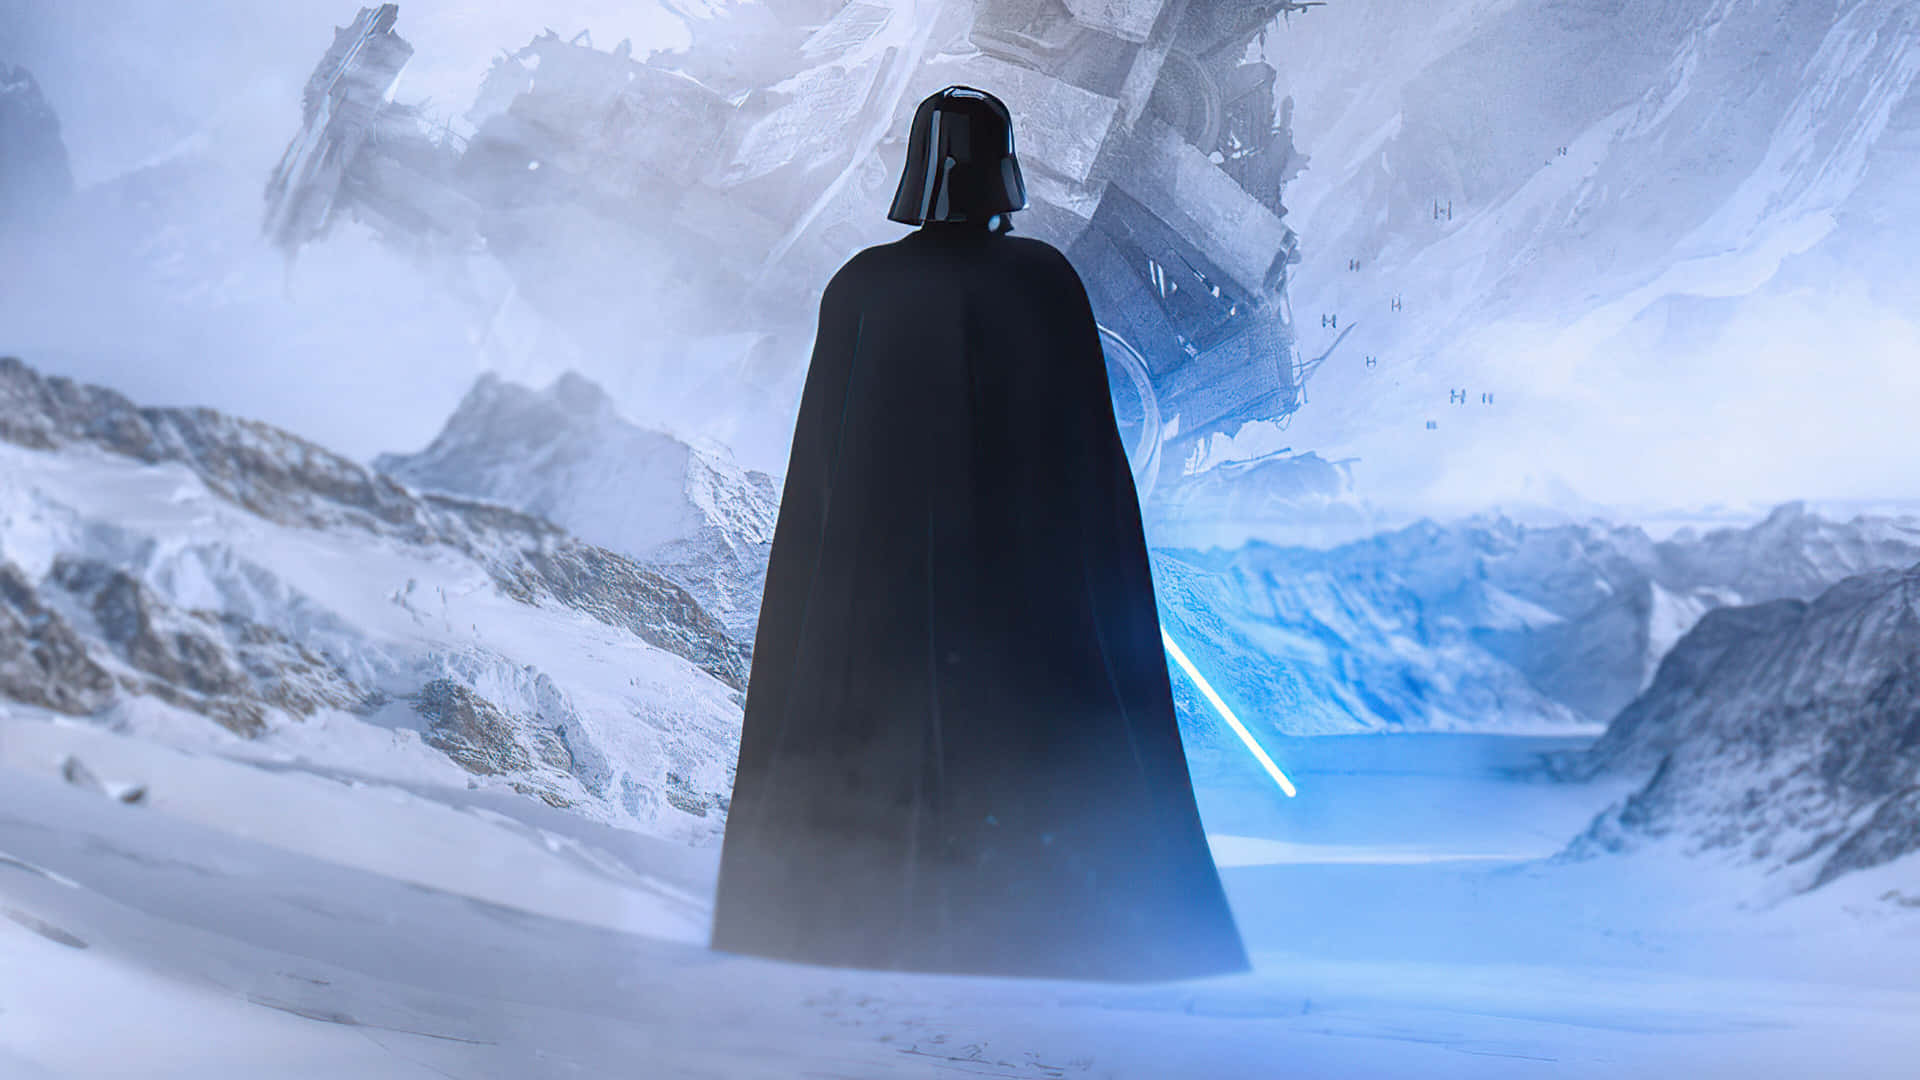 Darth Vader Snowy Landscape4 K Wallpaper